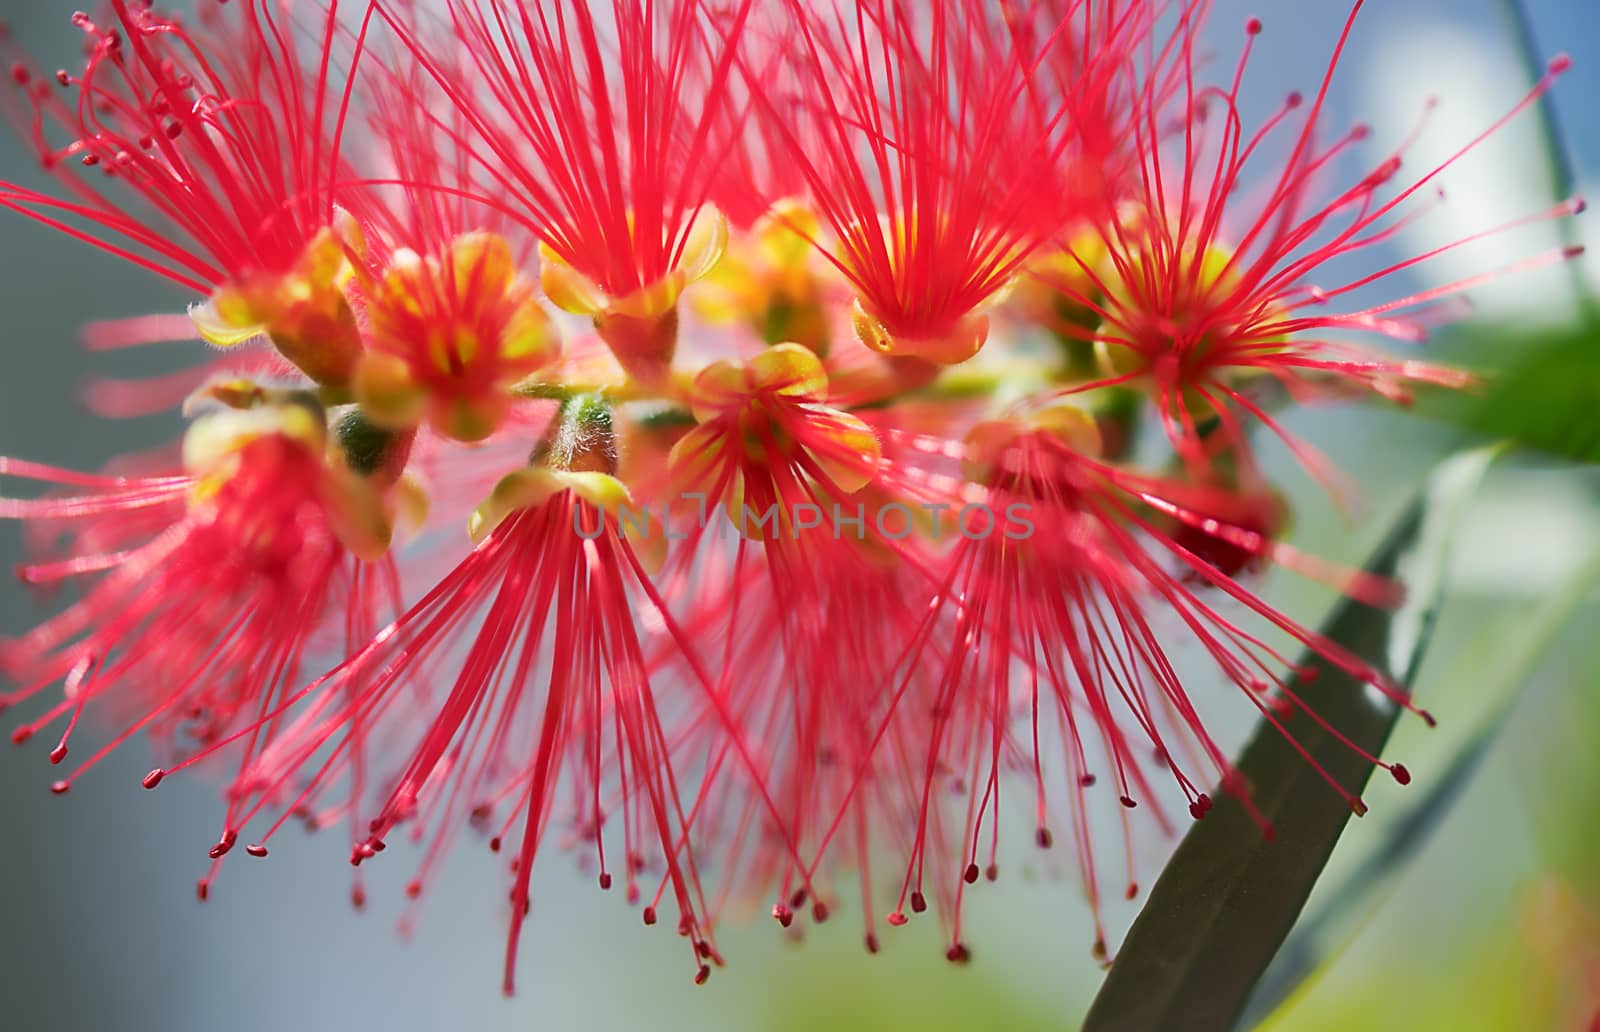 New Spring bloom of the Australian wildflower, Callistemon Captain Cook, commonly called bottlebrush flower